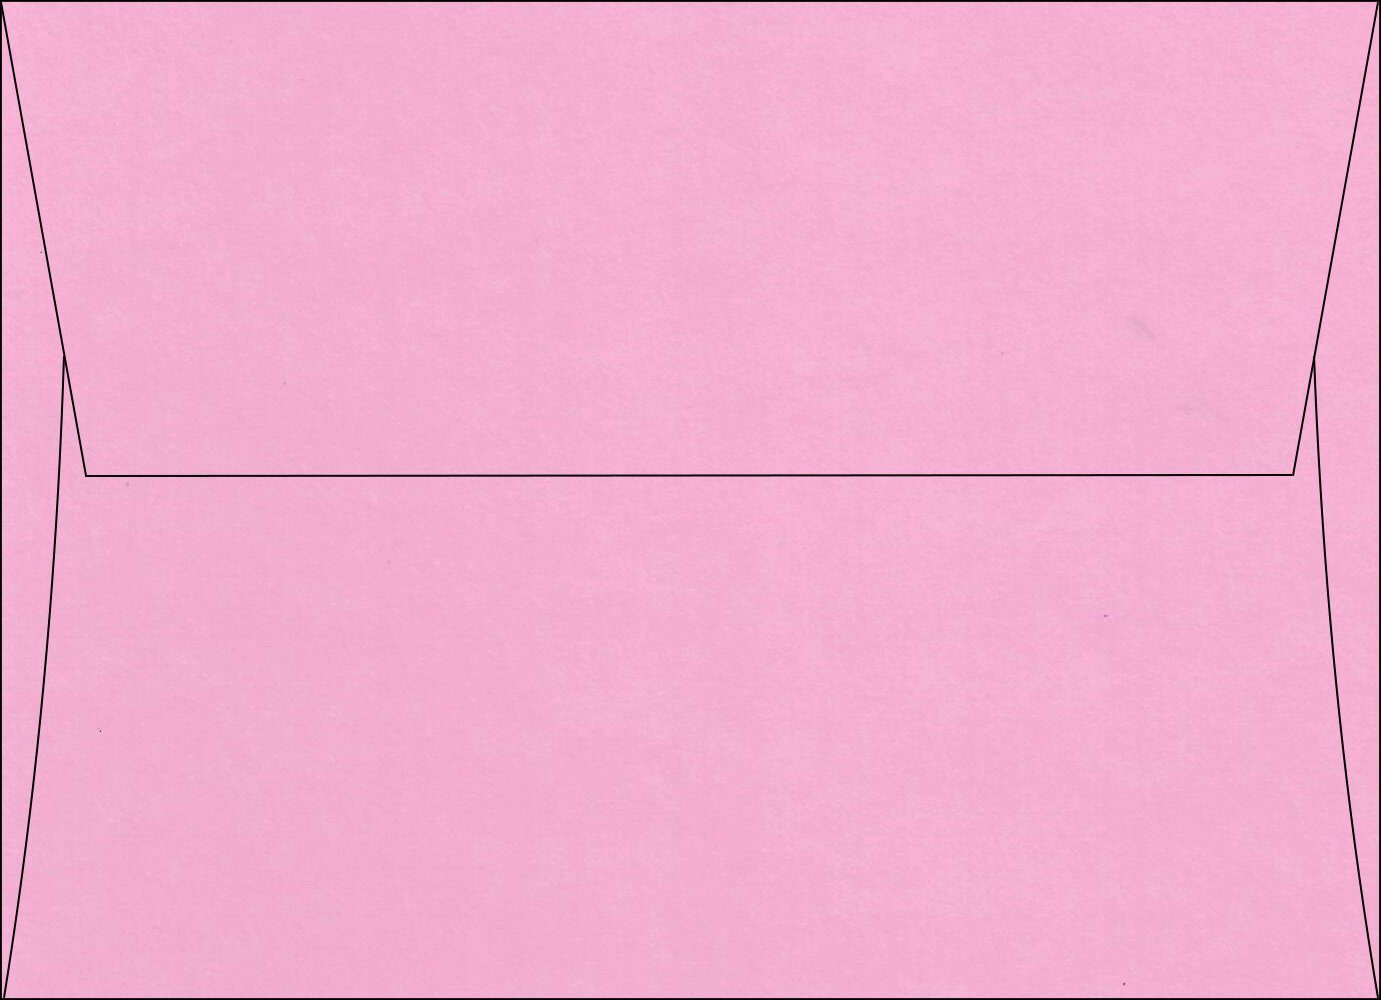  Cotton Candy | Pop-Tone Square Flap Envelopes 